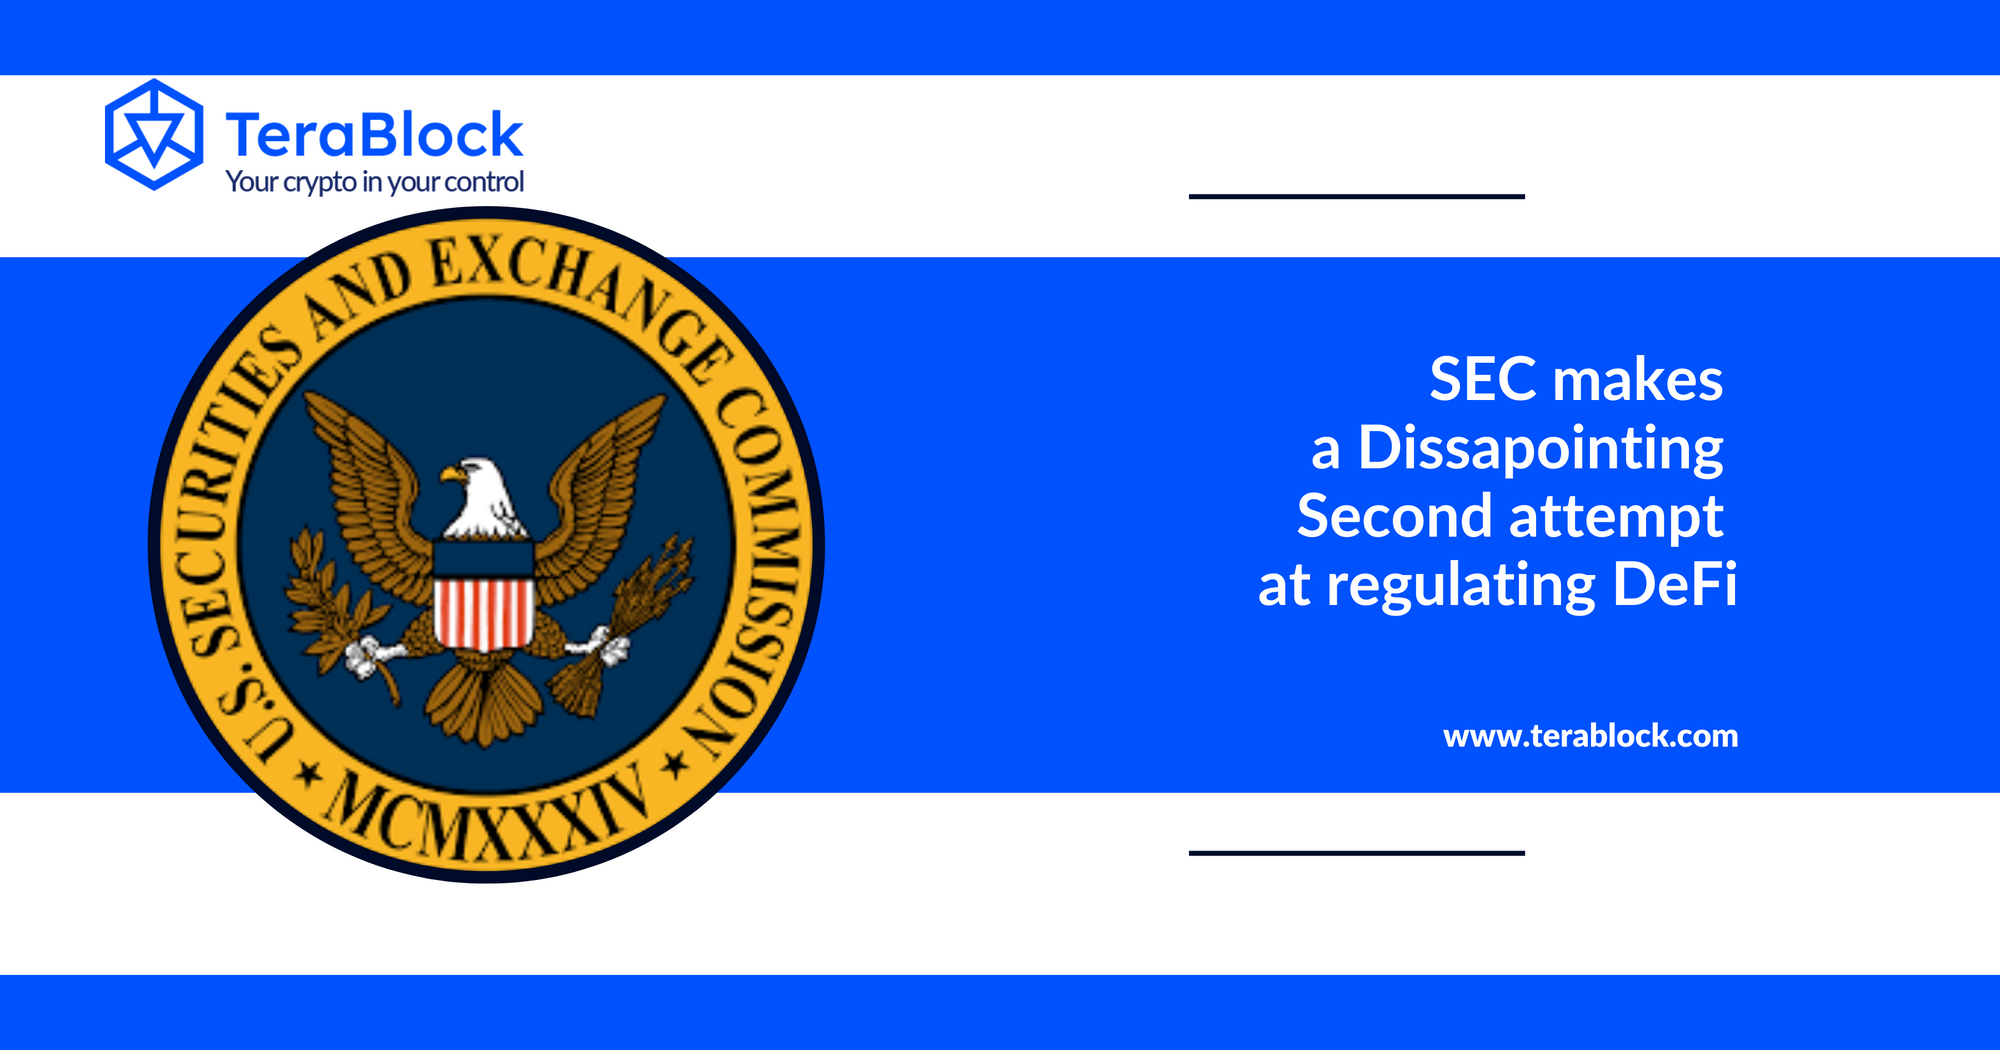 SEC's Second Attempt at Regulating DeFi Falls Short